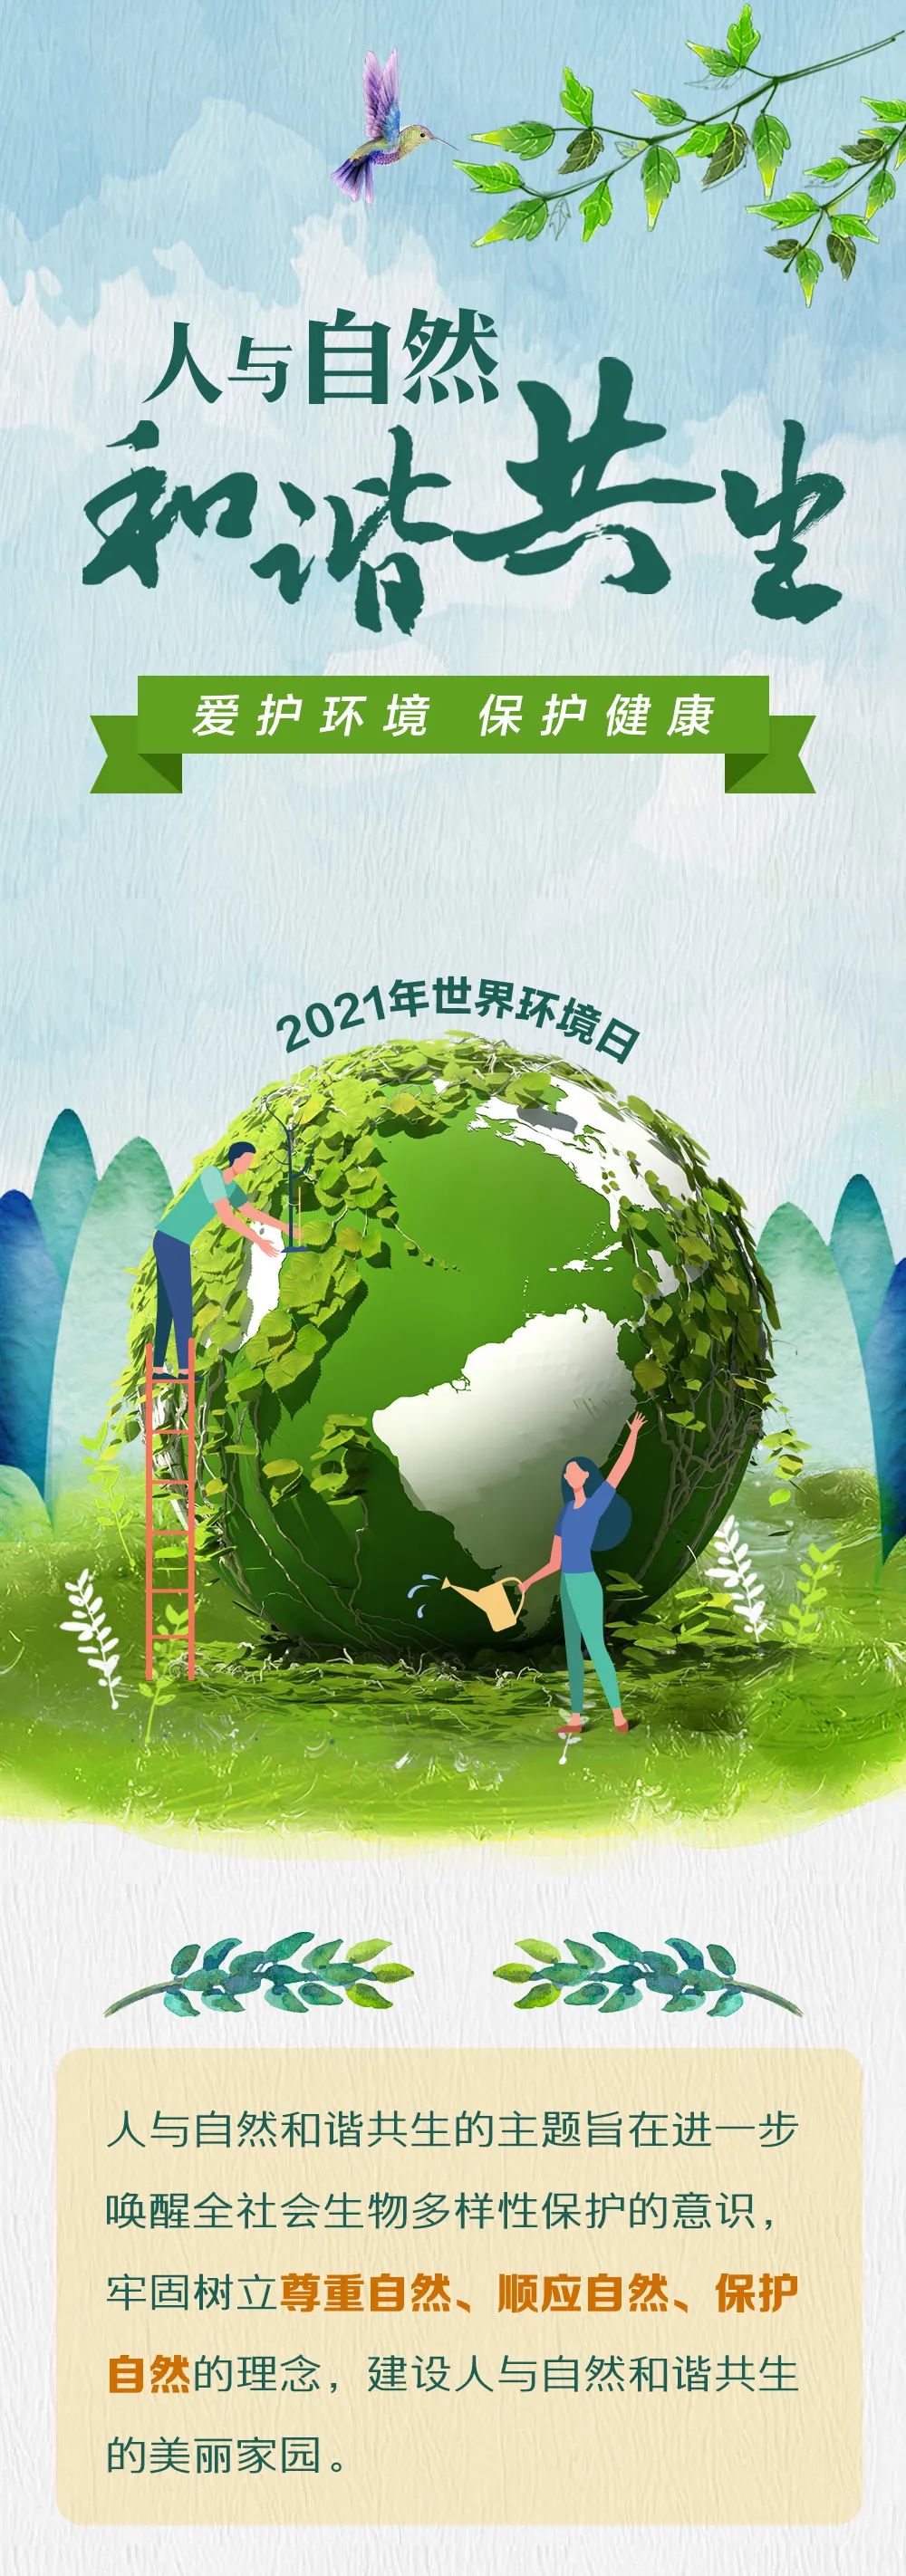 世界环境日爱护环境保护健康人与自然和谐共生